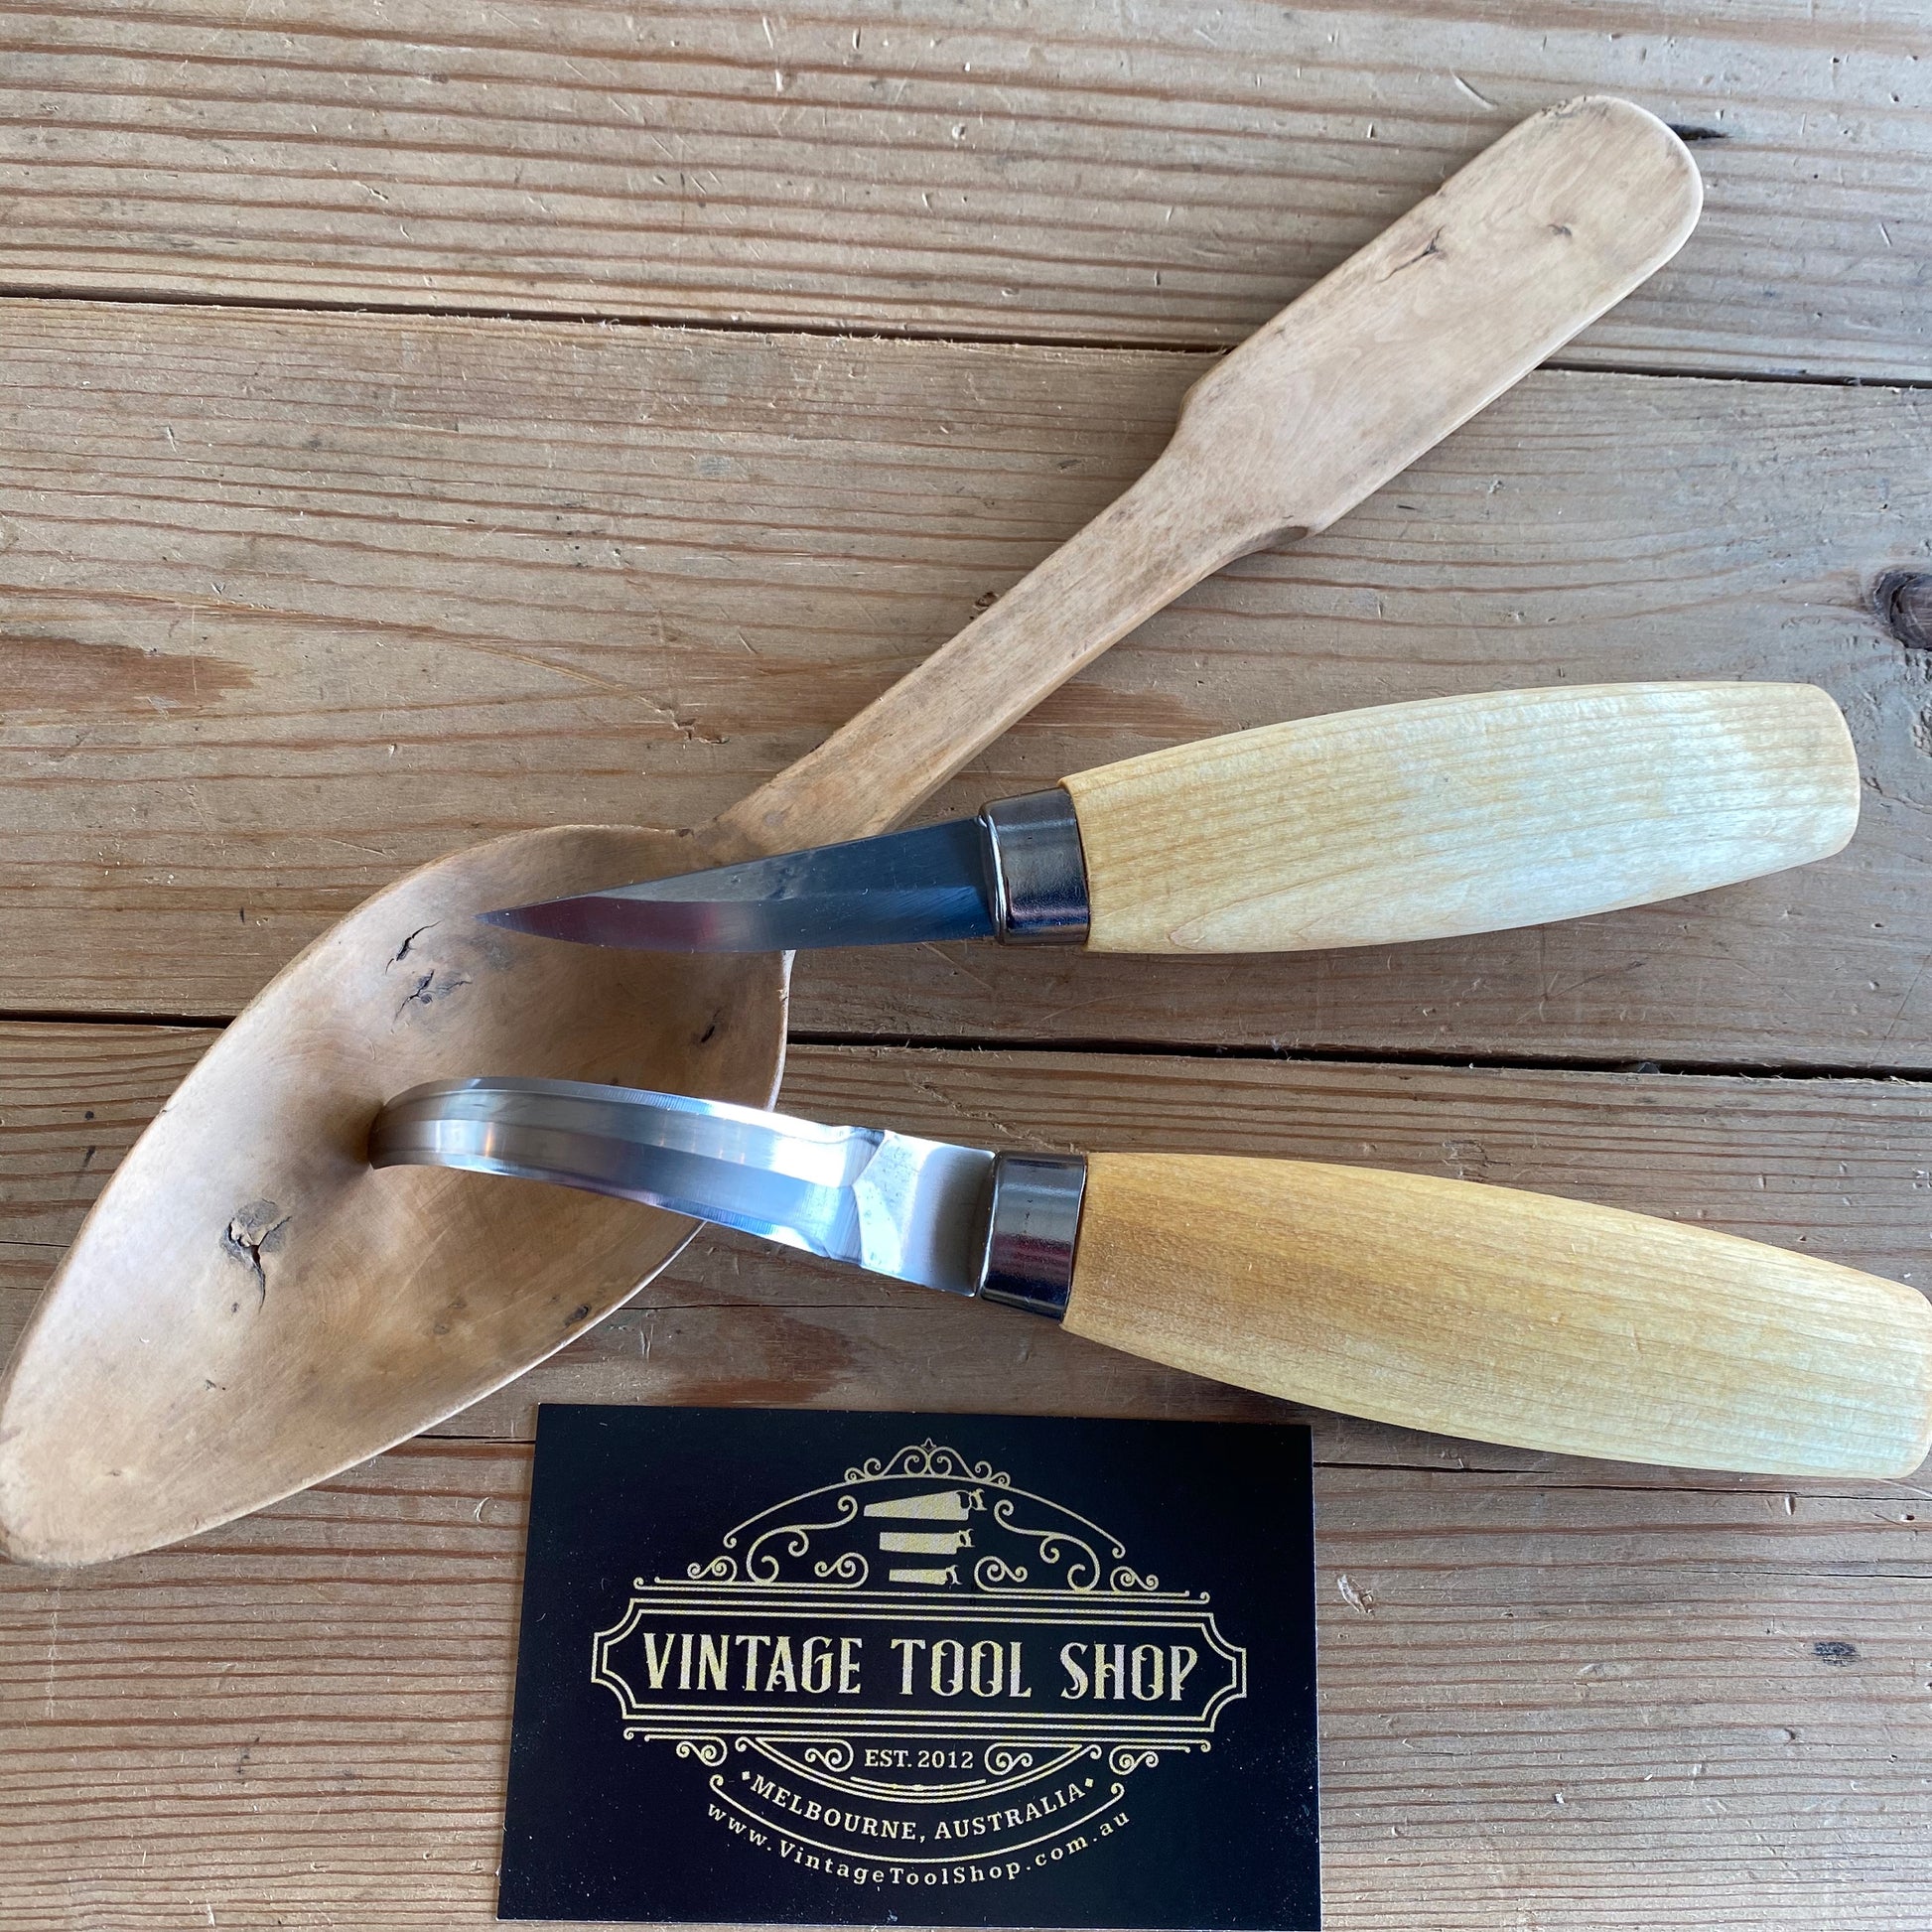 NEW Swedish MORA carving knife set hook spoon making whittling Sweden steel